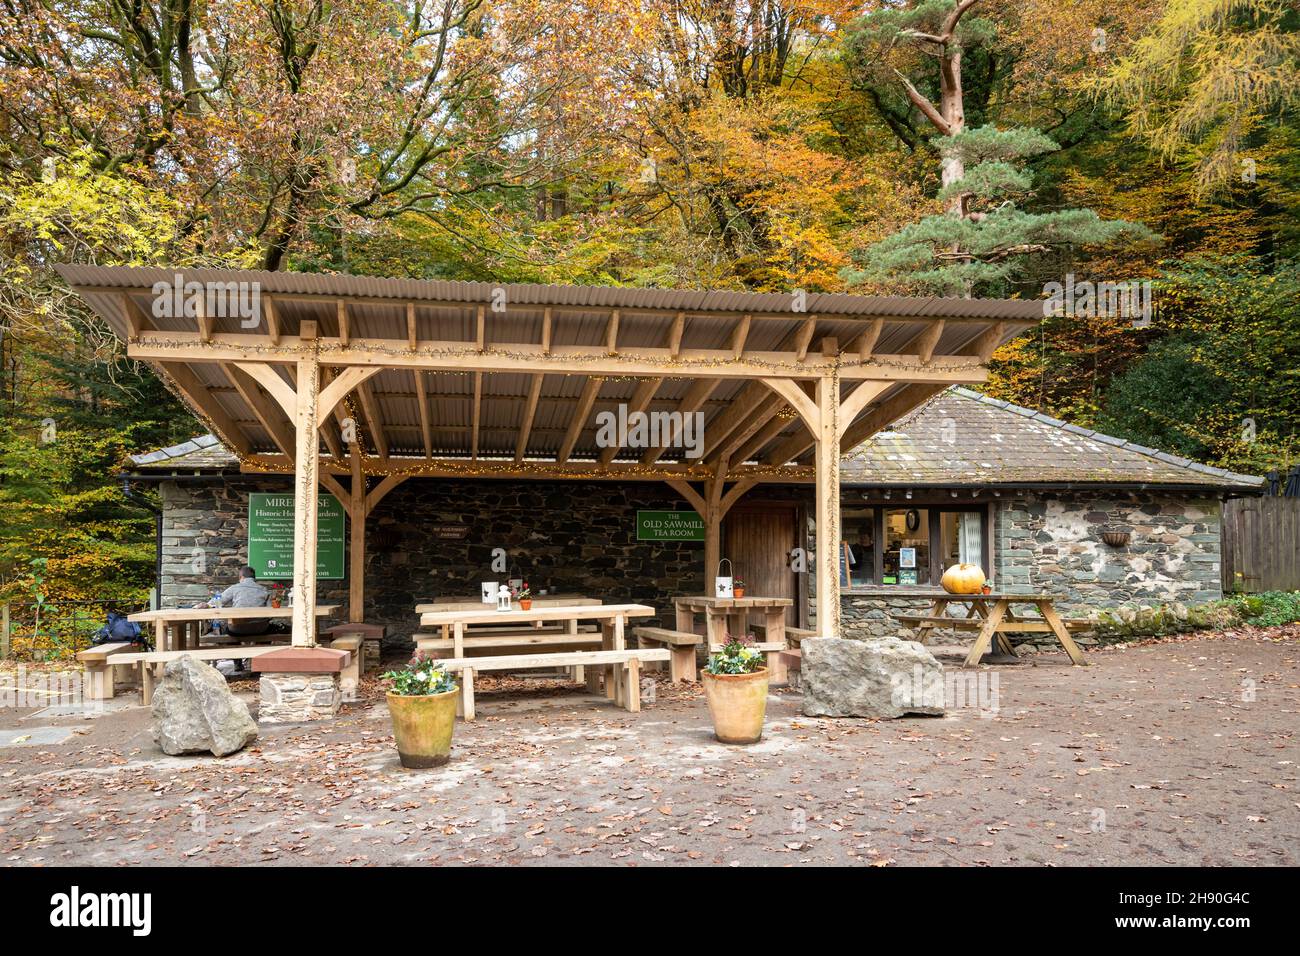 The Old Sawmill Tea Room at Dodd Wood près du lac Bassenthwaite à Cumbria, Angleterre, Royaume-Uni, en automne ou en novembre Banque D'Images